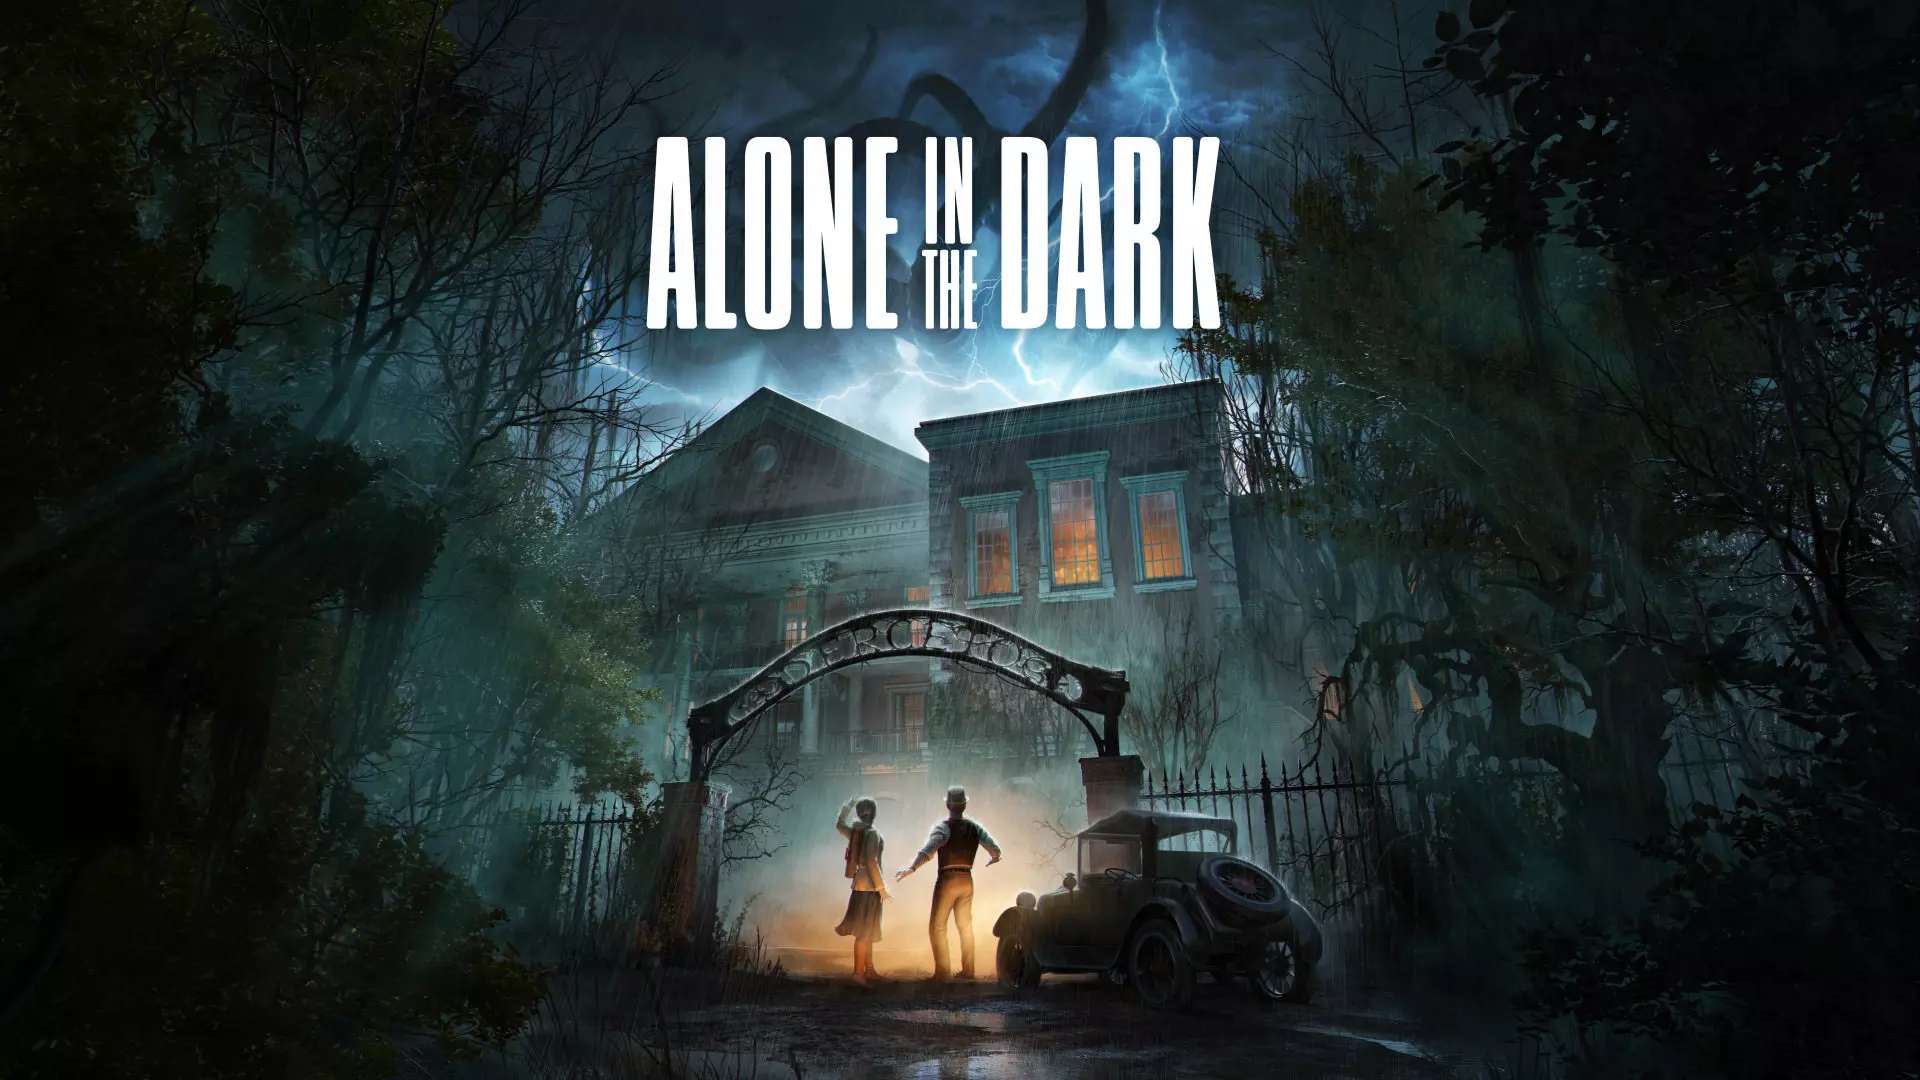 تریلر جدید فیلم Alone in the Dark مورد تحسین منتقدان قرار گرفته است